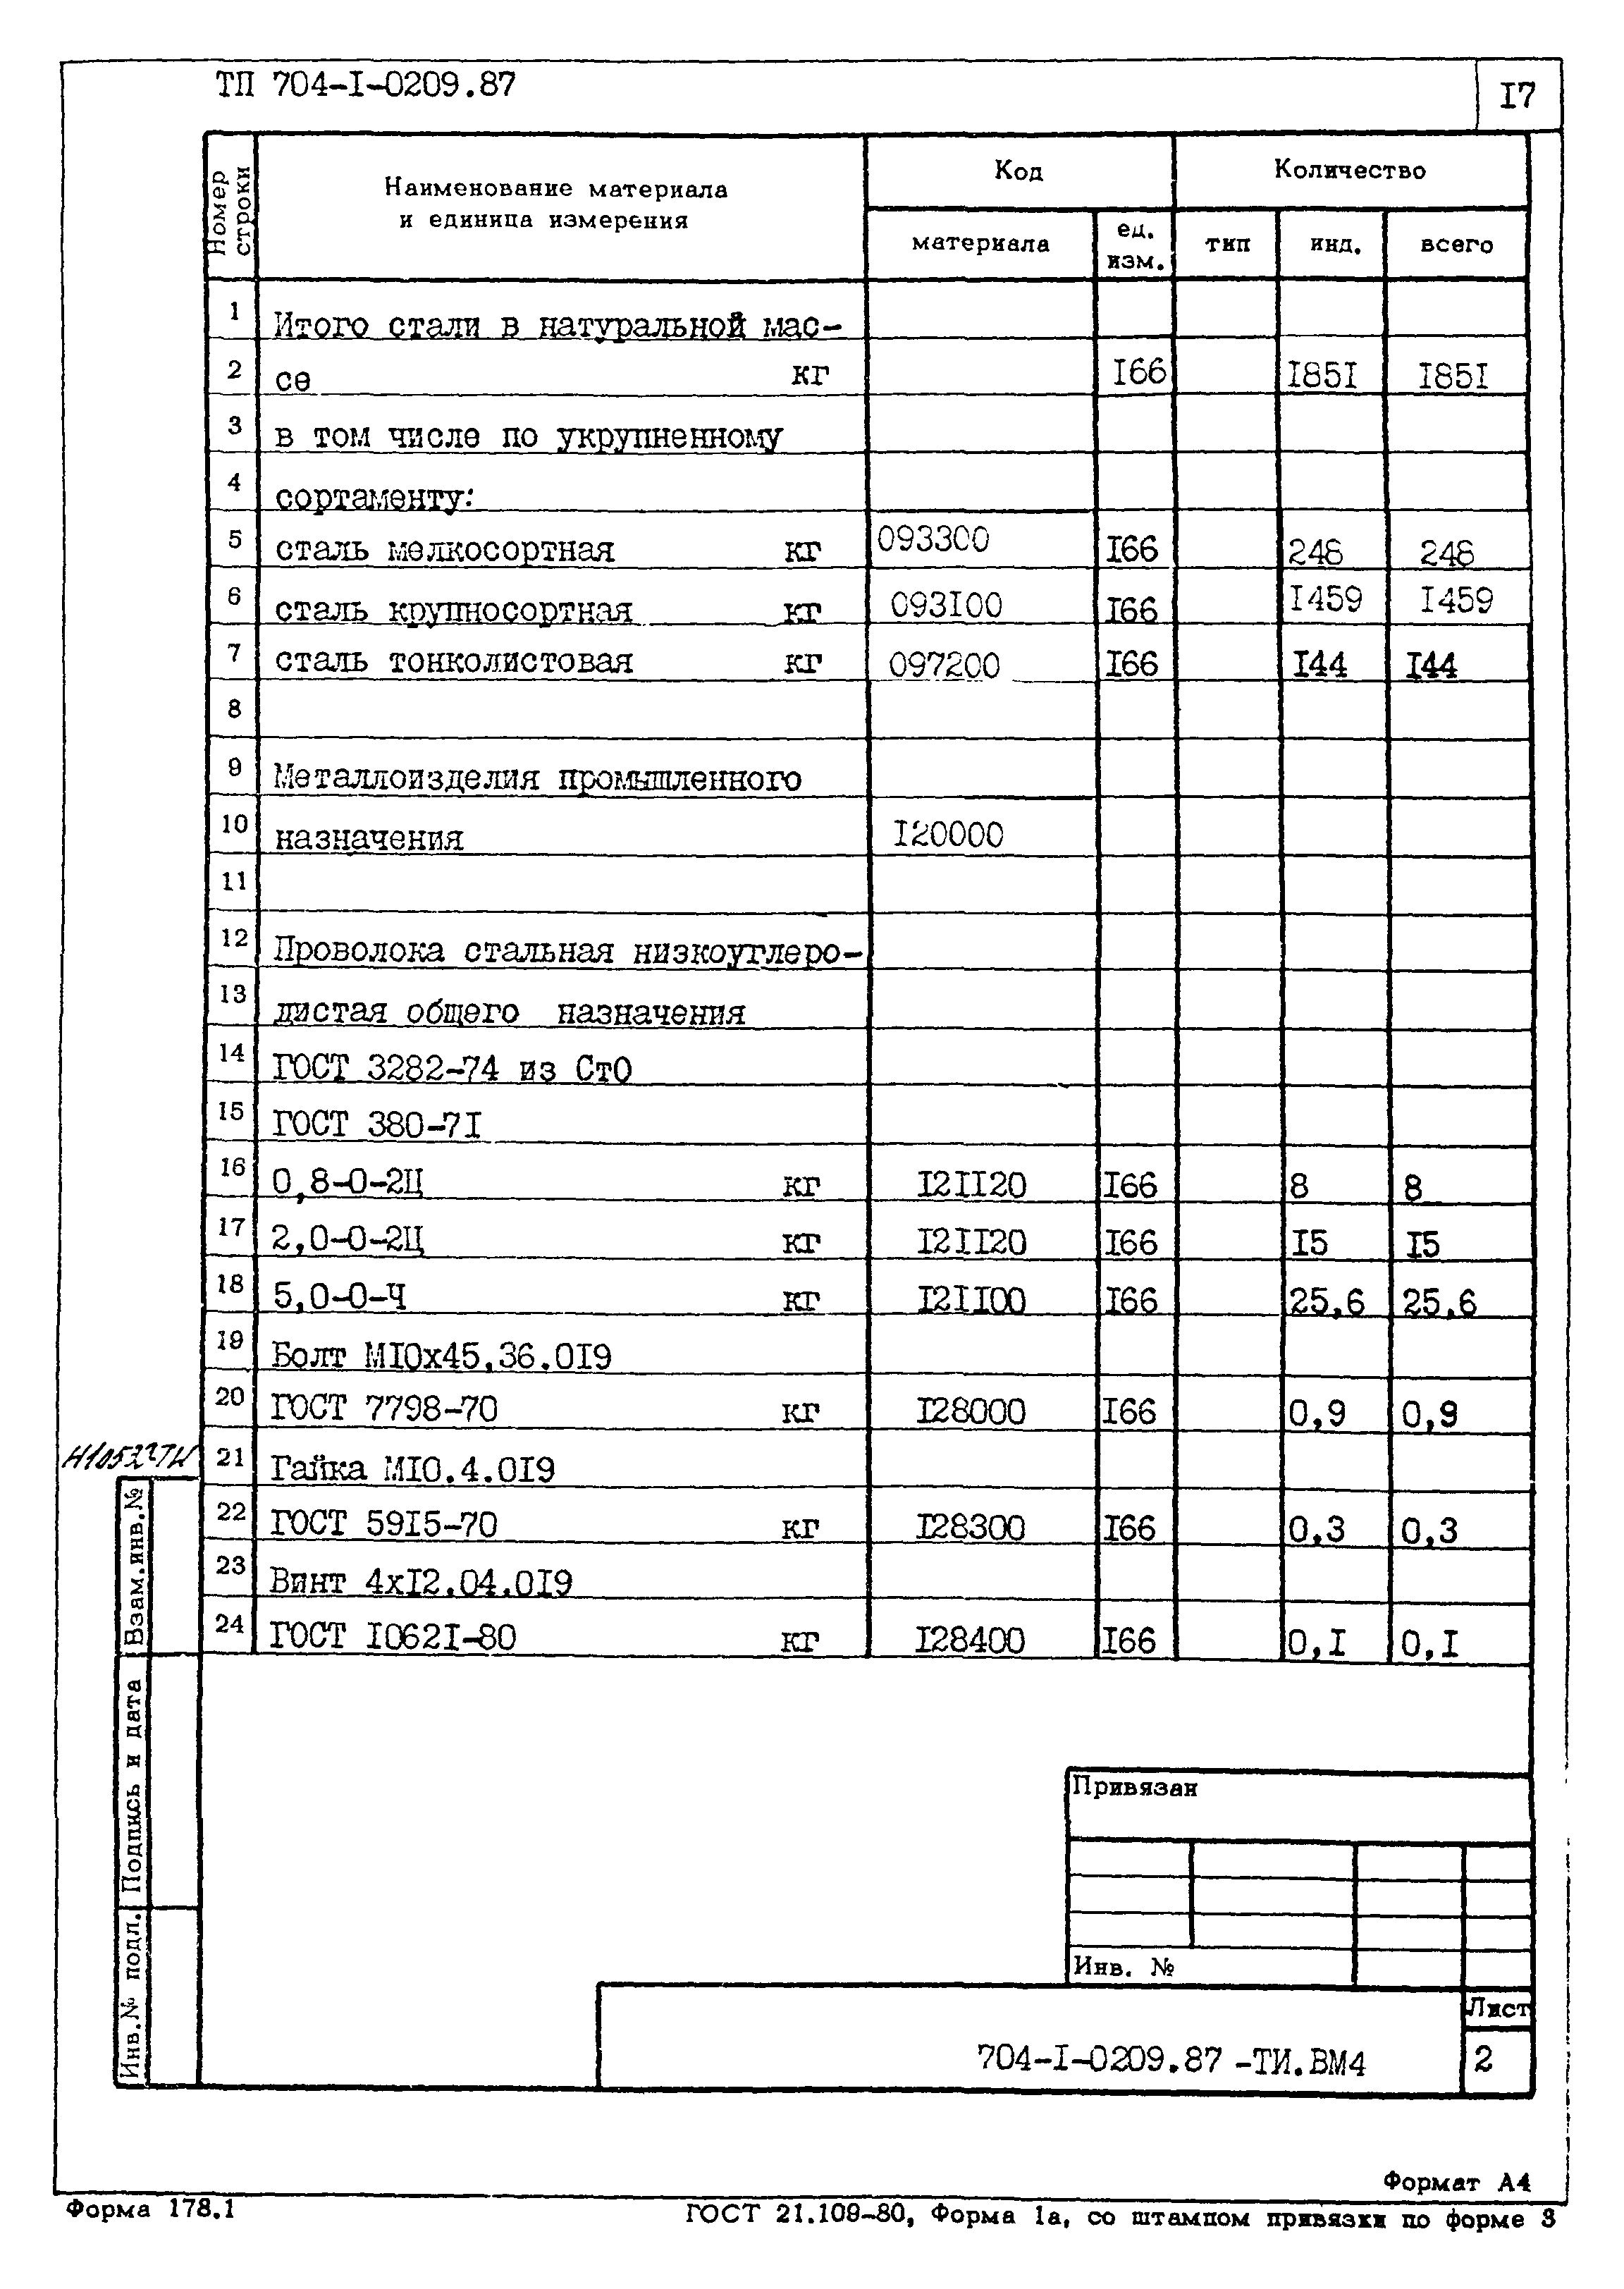 Типовые проектные решения 704-1-0209.87